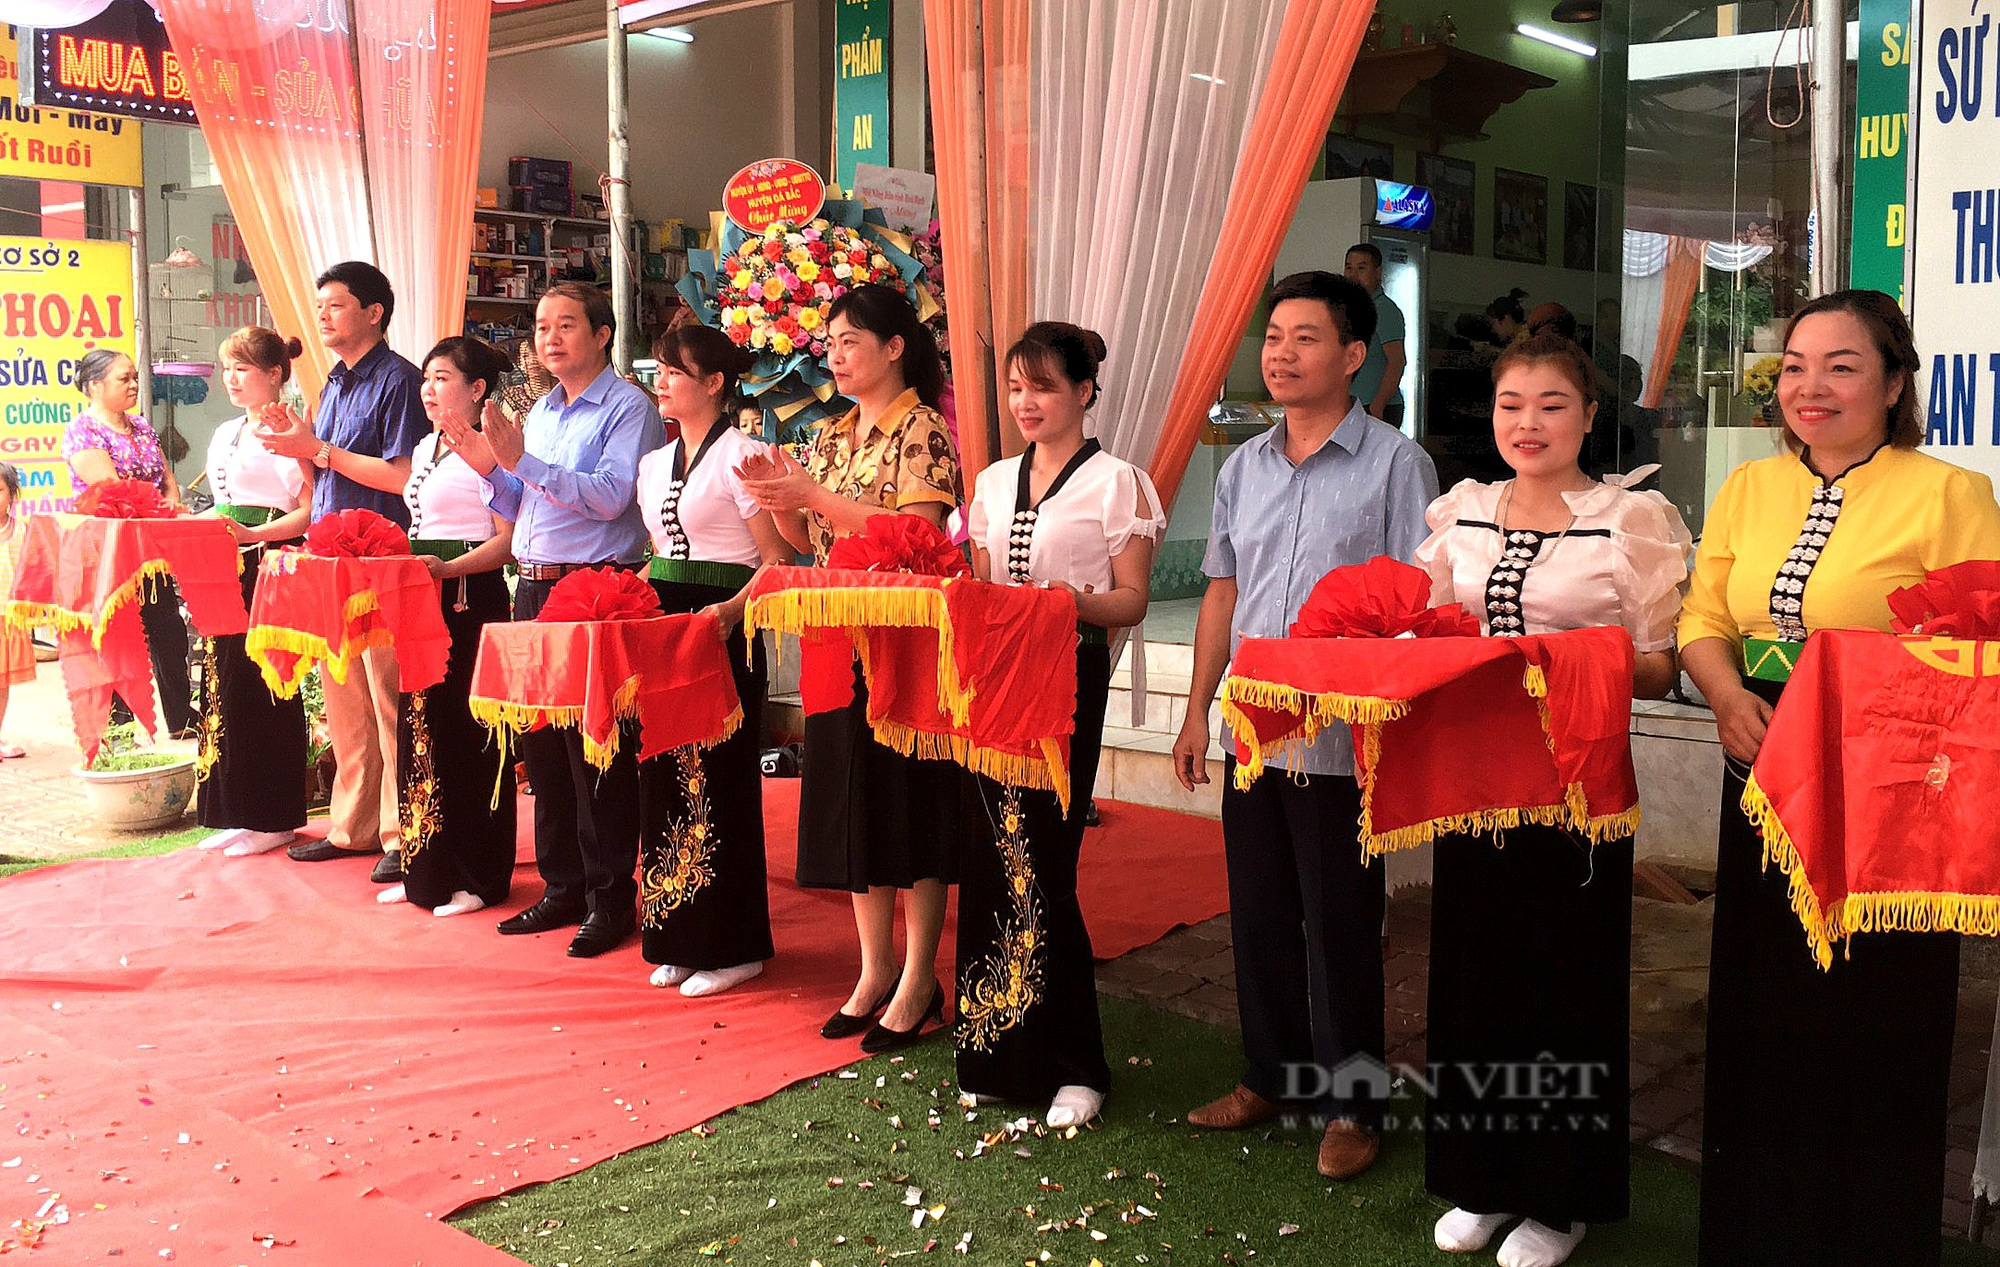 Hòa Bình: Khai trương cửa hàng nông sản thực phẩm an toàn đầu tiên trên địa bàn huyện Đà Bắc - Ảnh 2.